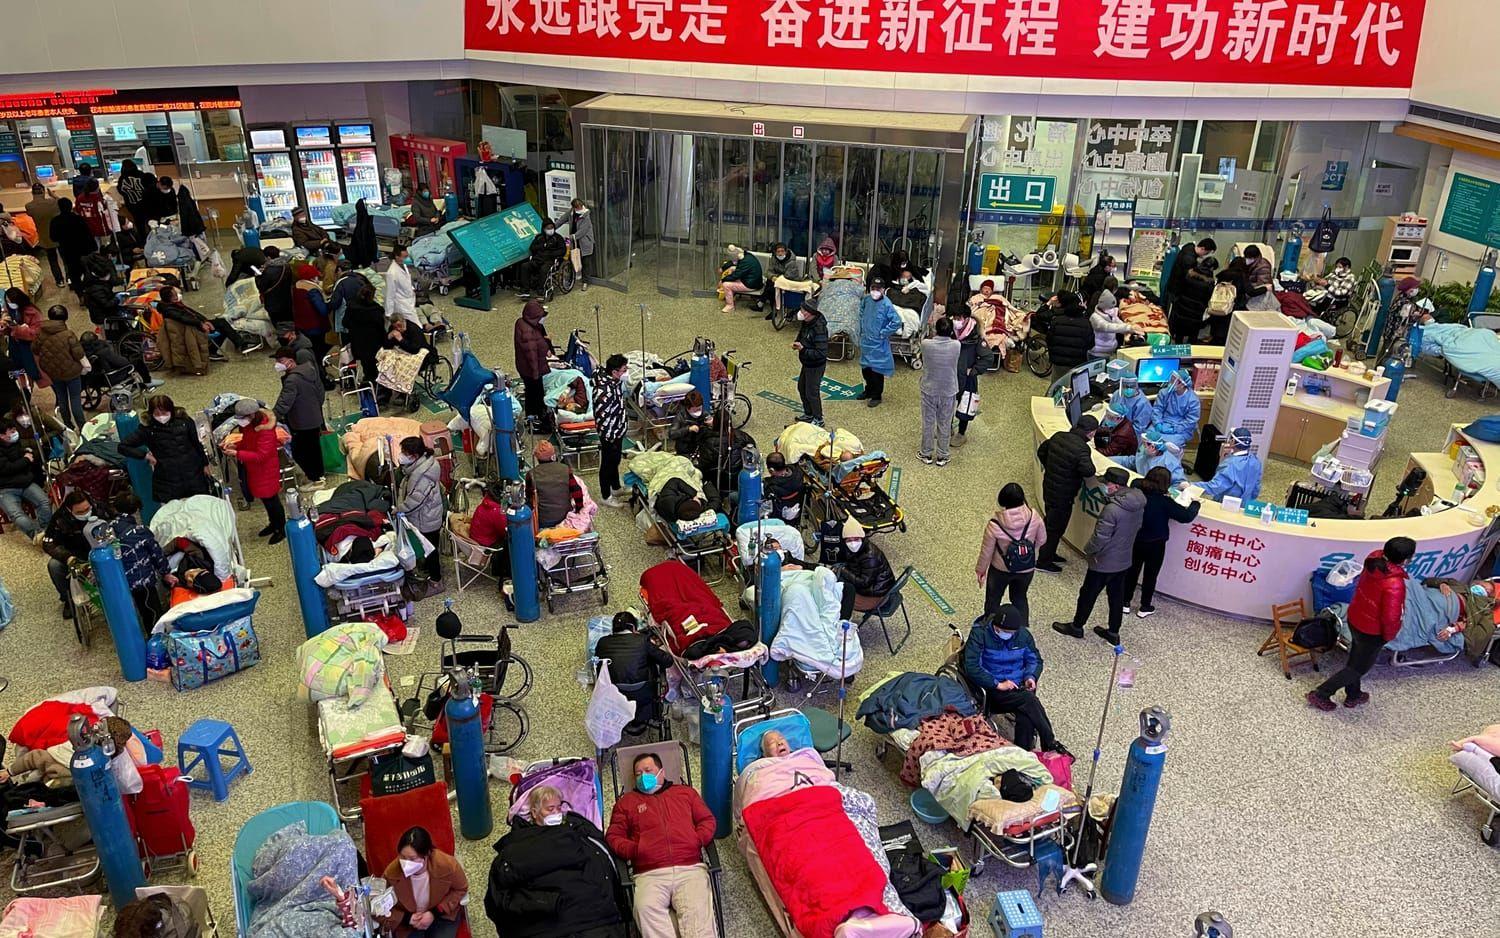 Kinas myndigheter meddelar att de kommer att skärpa censureringen av ”pandemirykten” under vårfestivalen. 